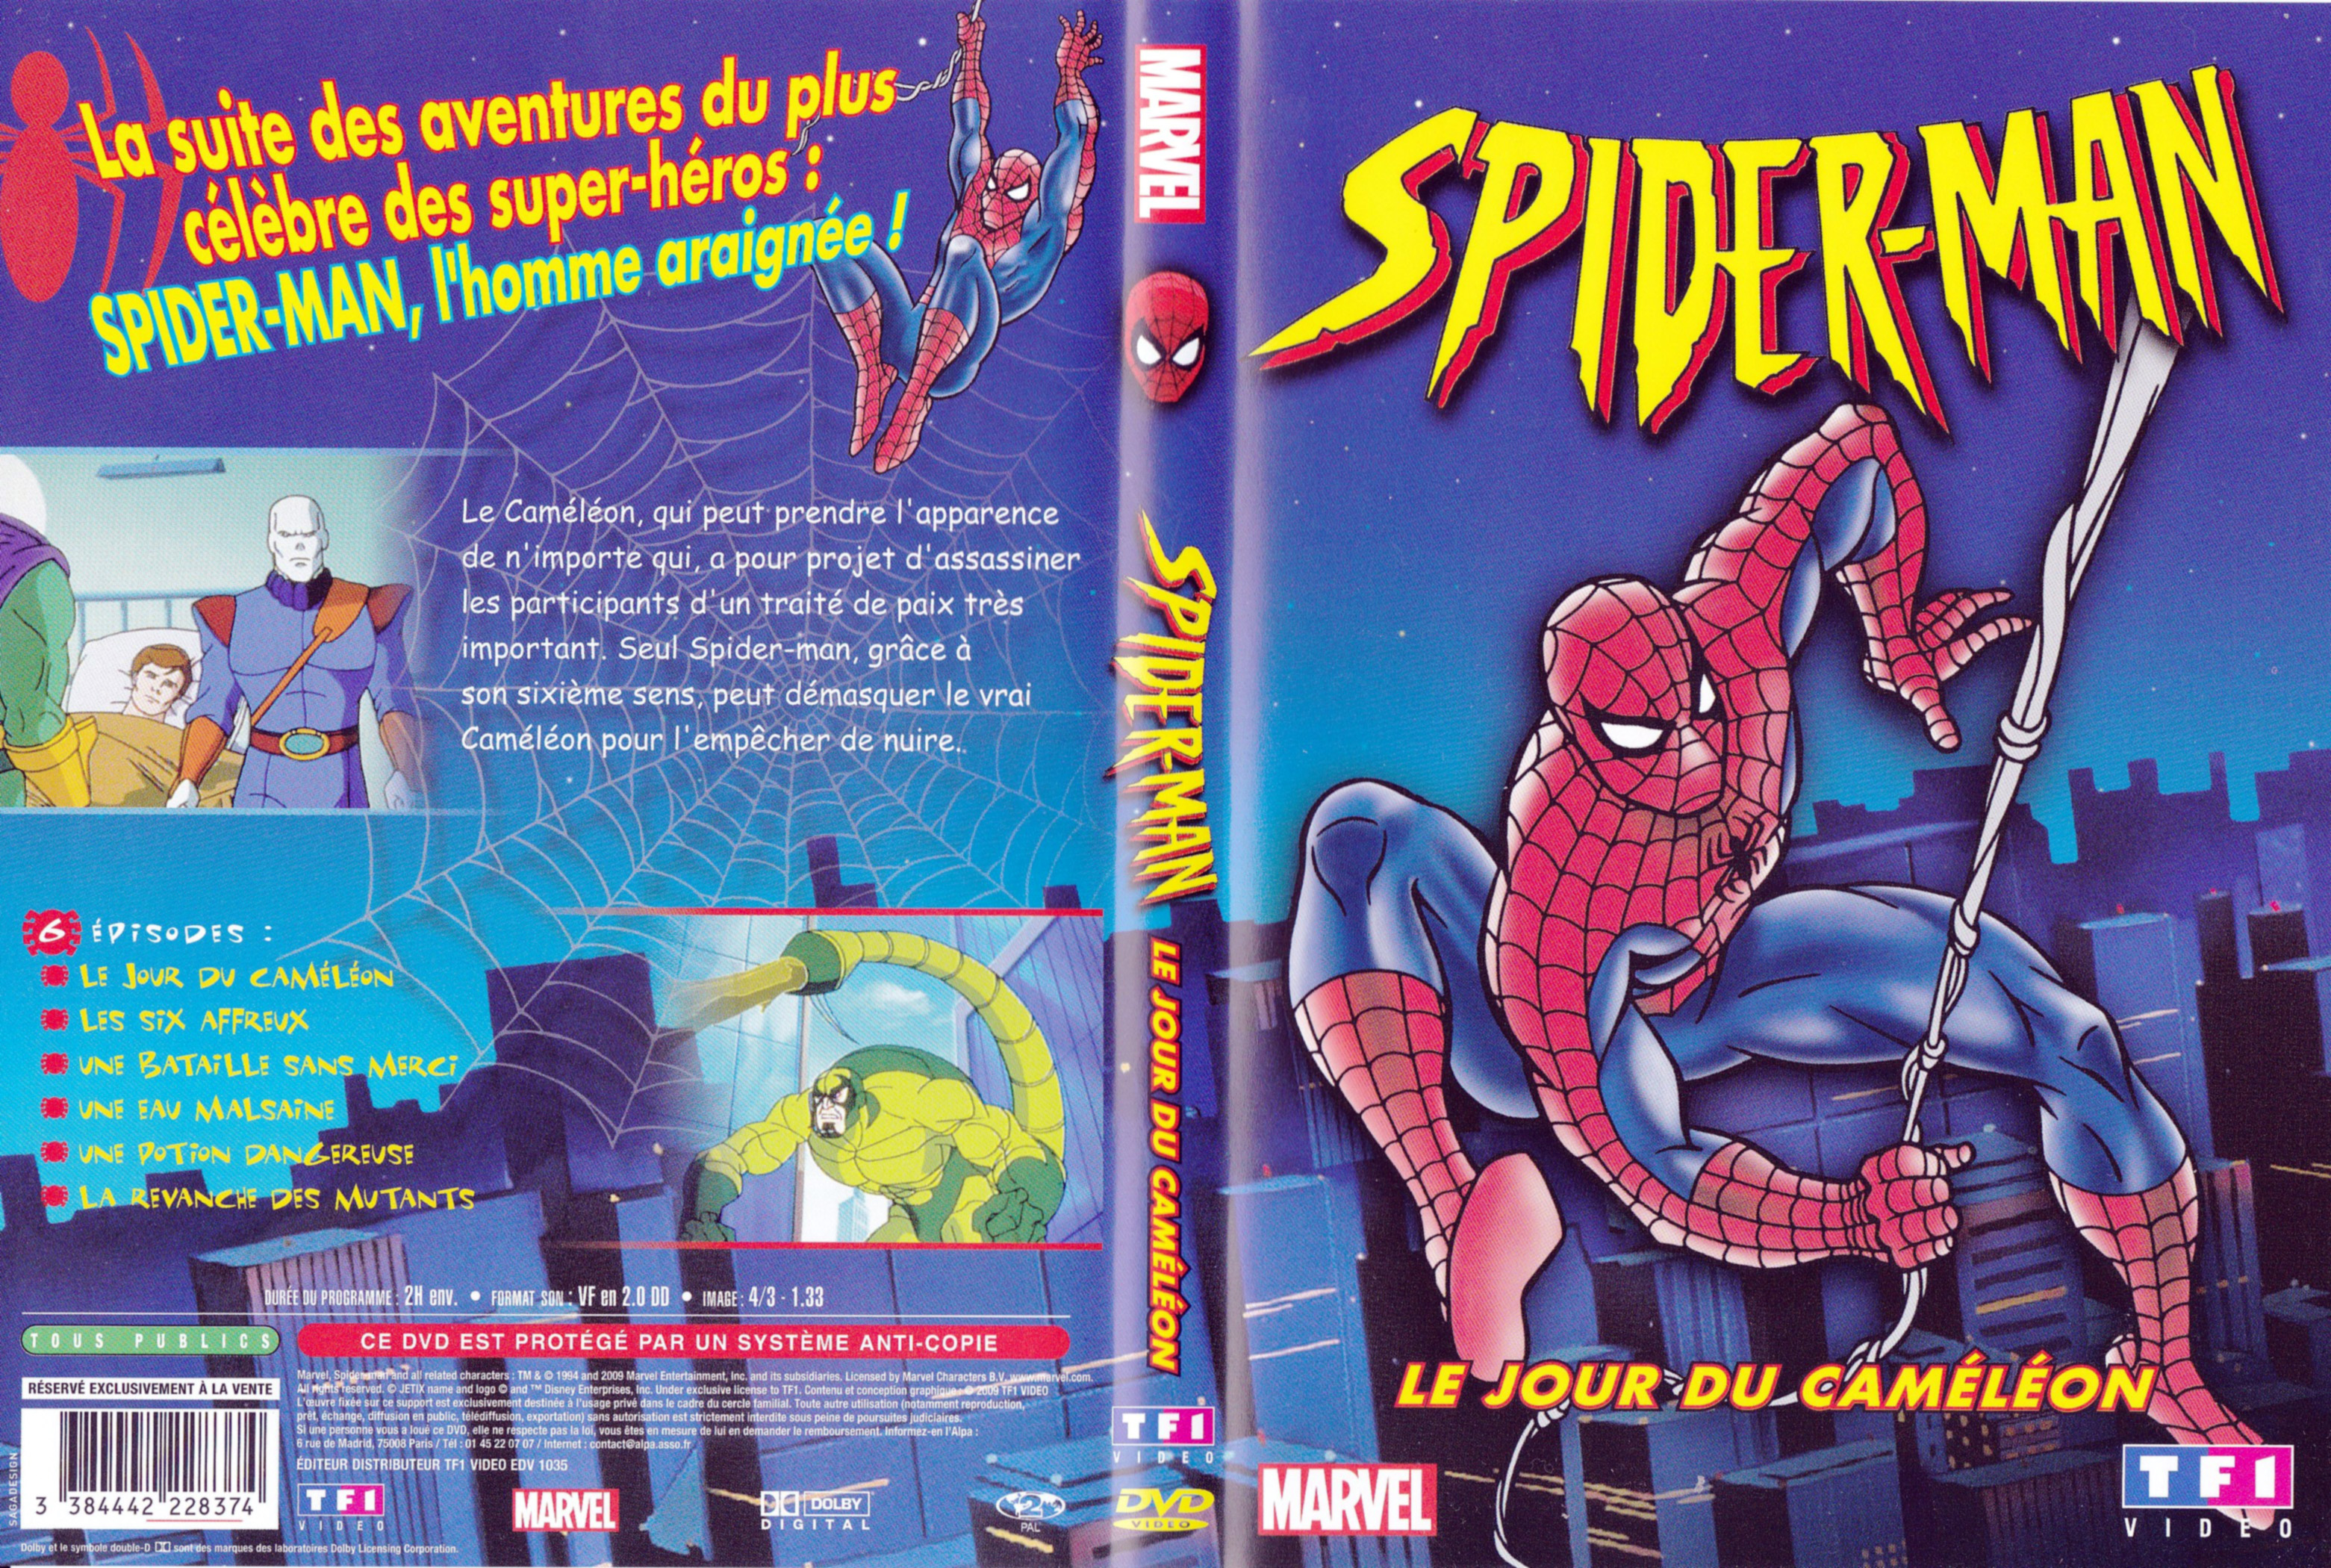 Jaquette DVD Spiderman - Le jour du camlon (DA)